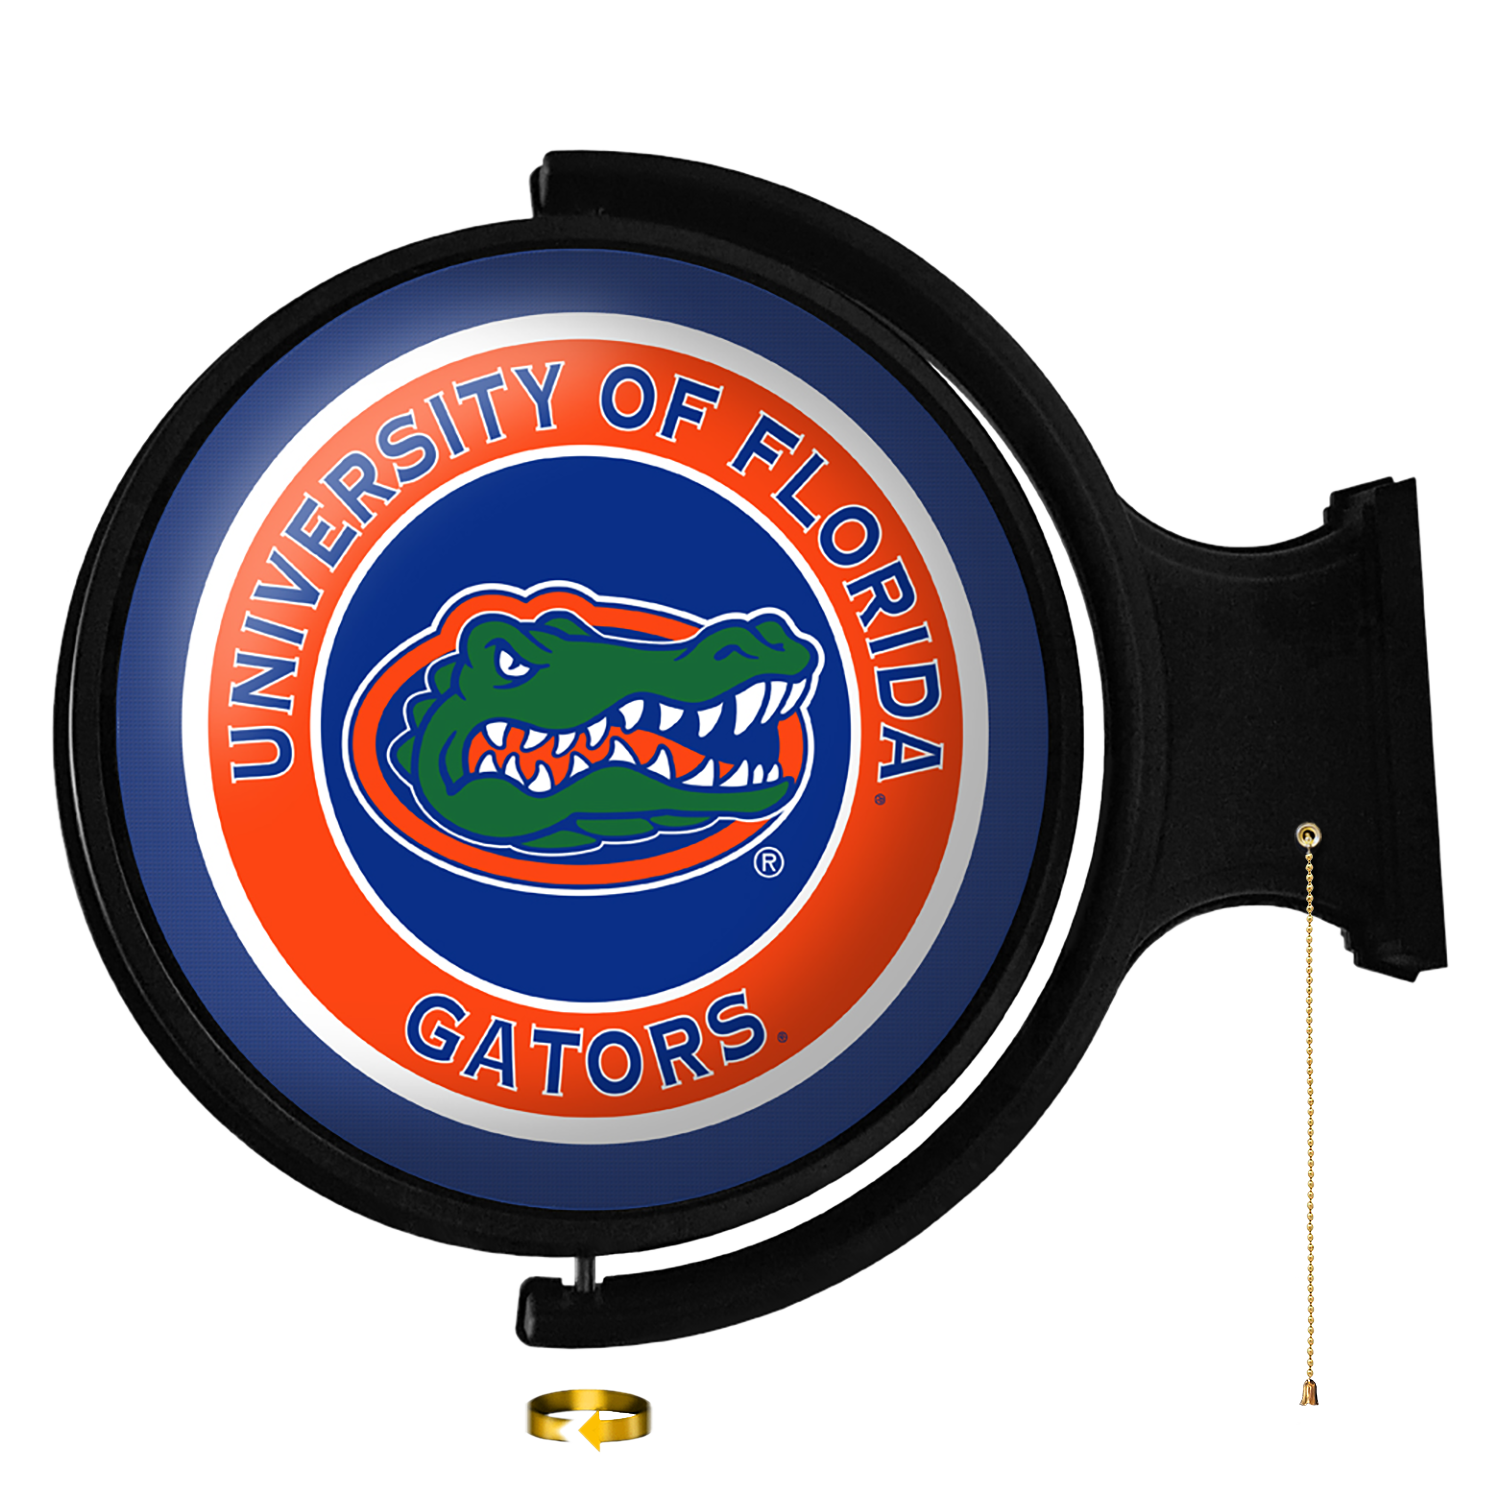 Florida Gators Round Rotating Wall Sign